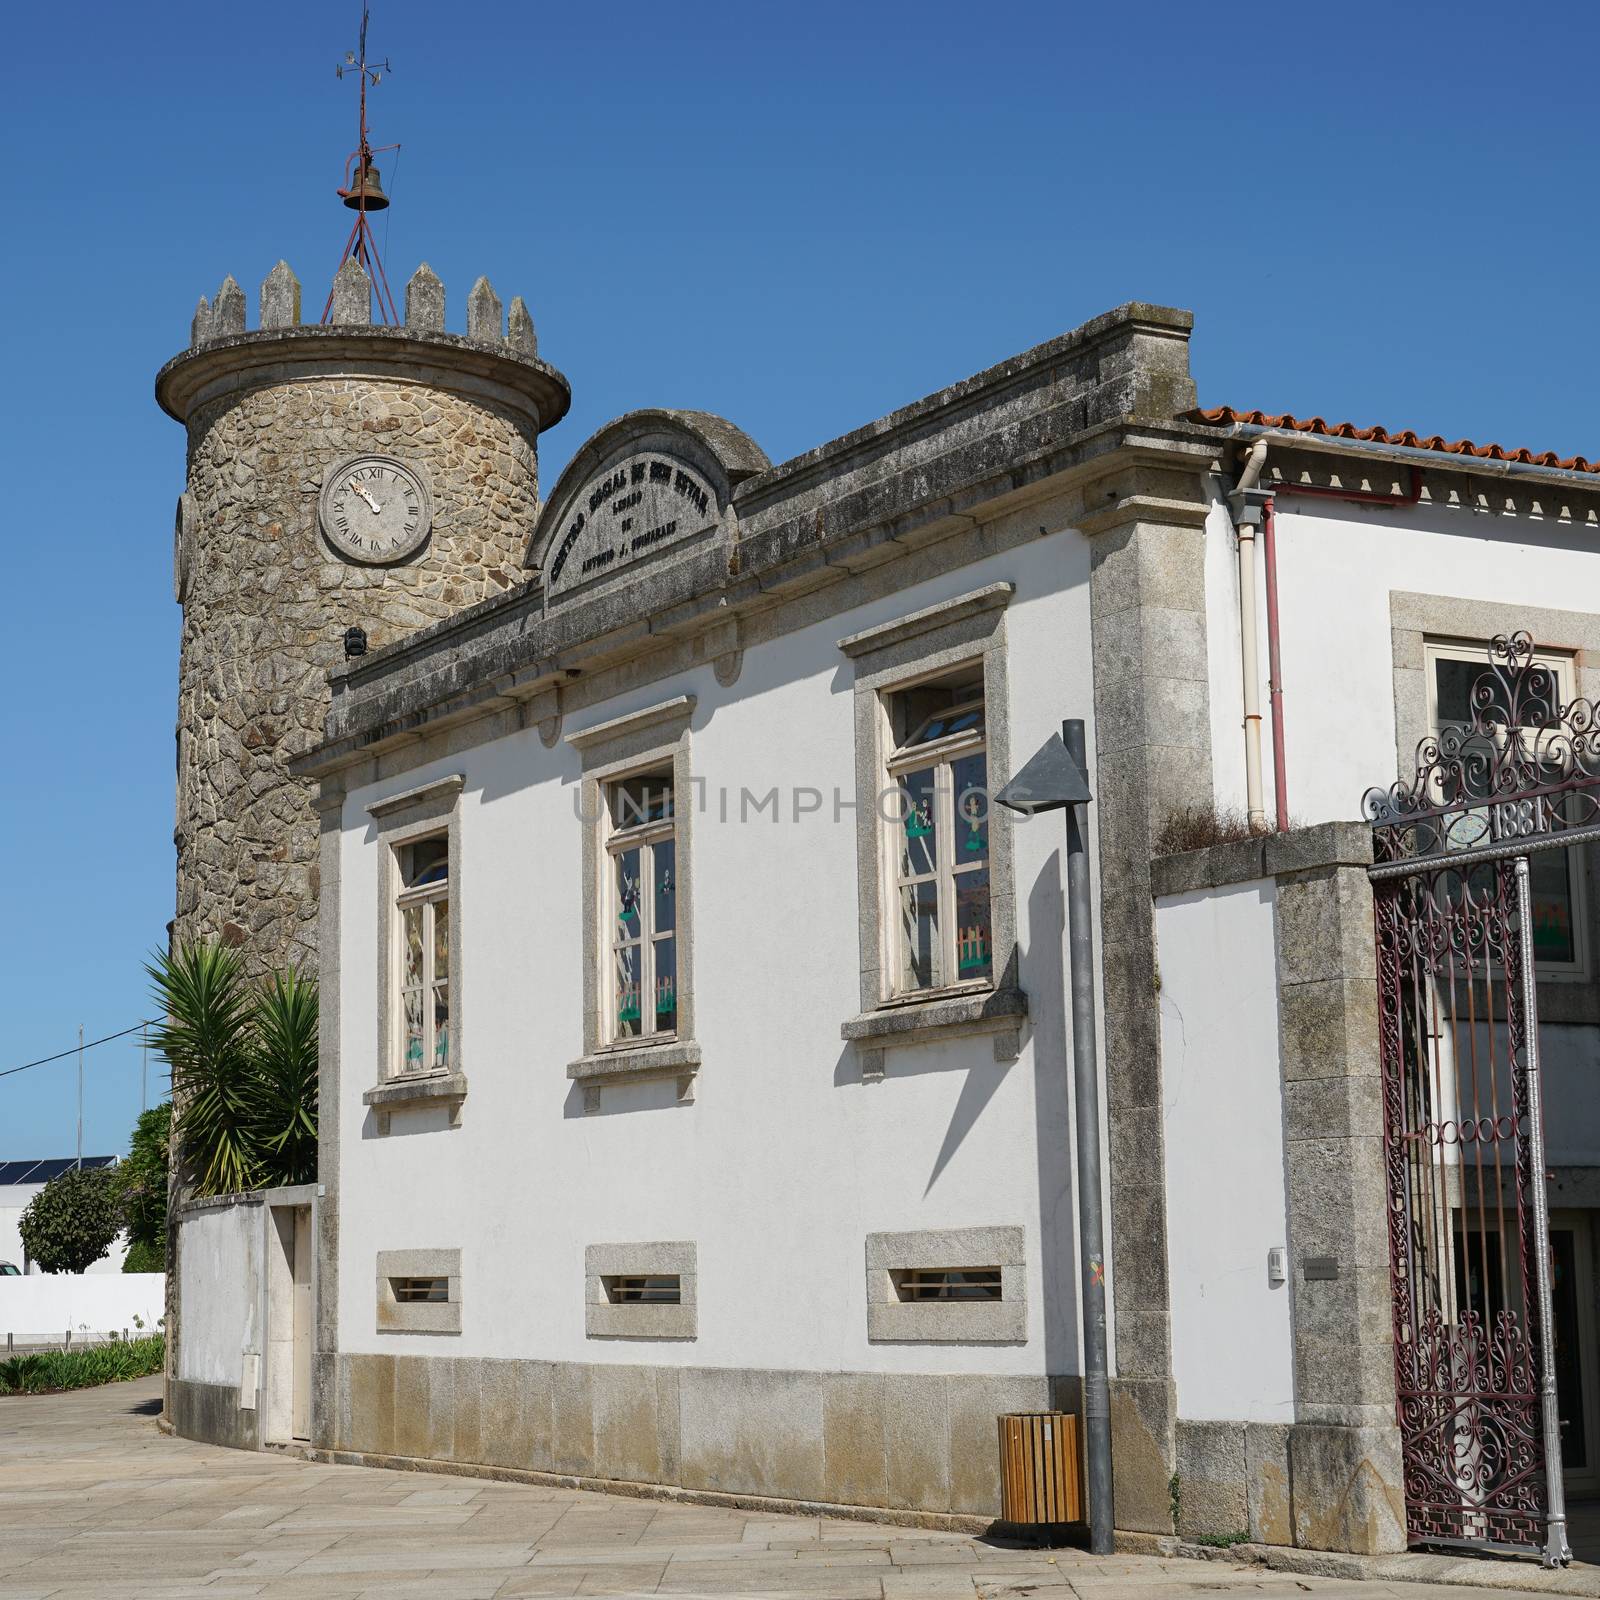 Clocktower of Sao Pedro de Rates, Camino de Santiago, Portugal